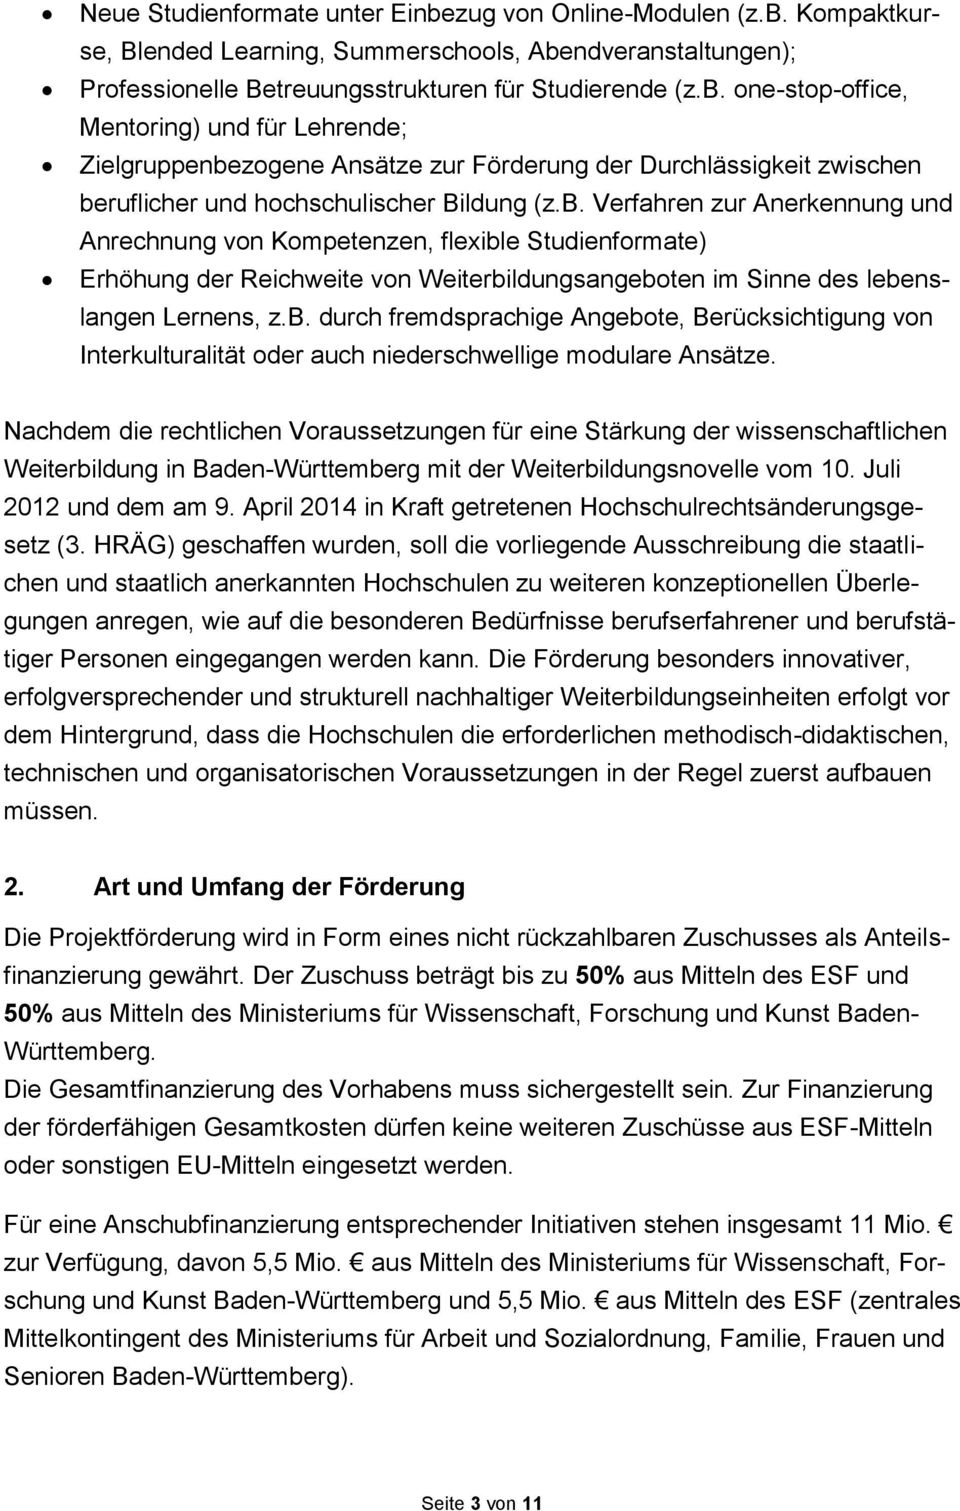 Nachdem die rechtlichen Voraussetzungen für eine Stärkung der wissenschaftlichen Weiterbildung in Baden-Württemberg mit der Weiterbildungsnovelle vom 10. Juli 2012 und dem am 9.